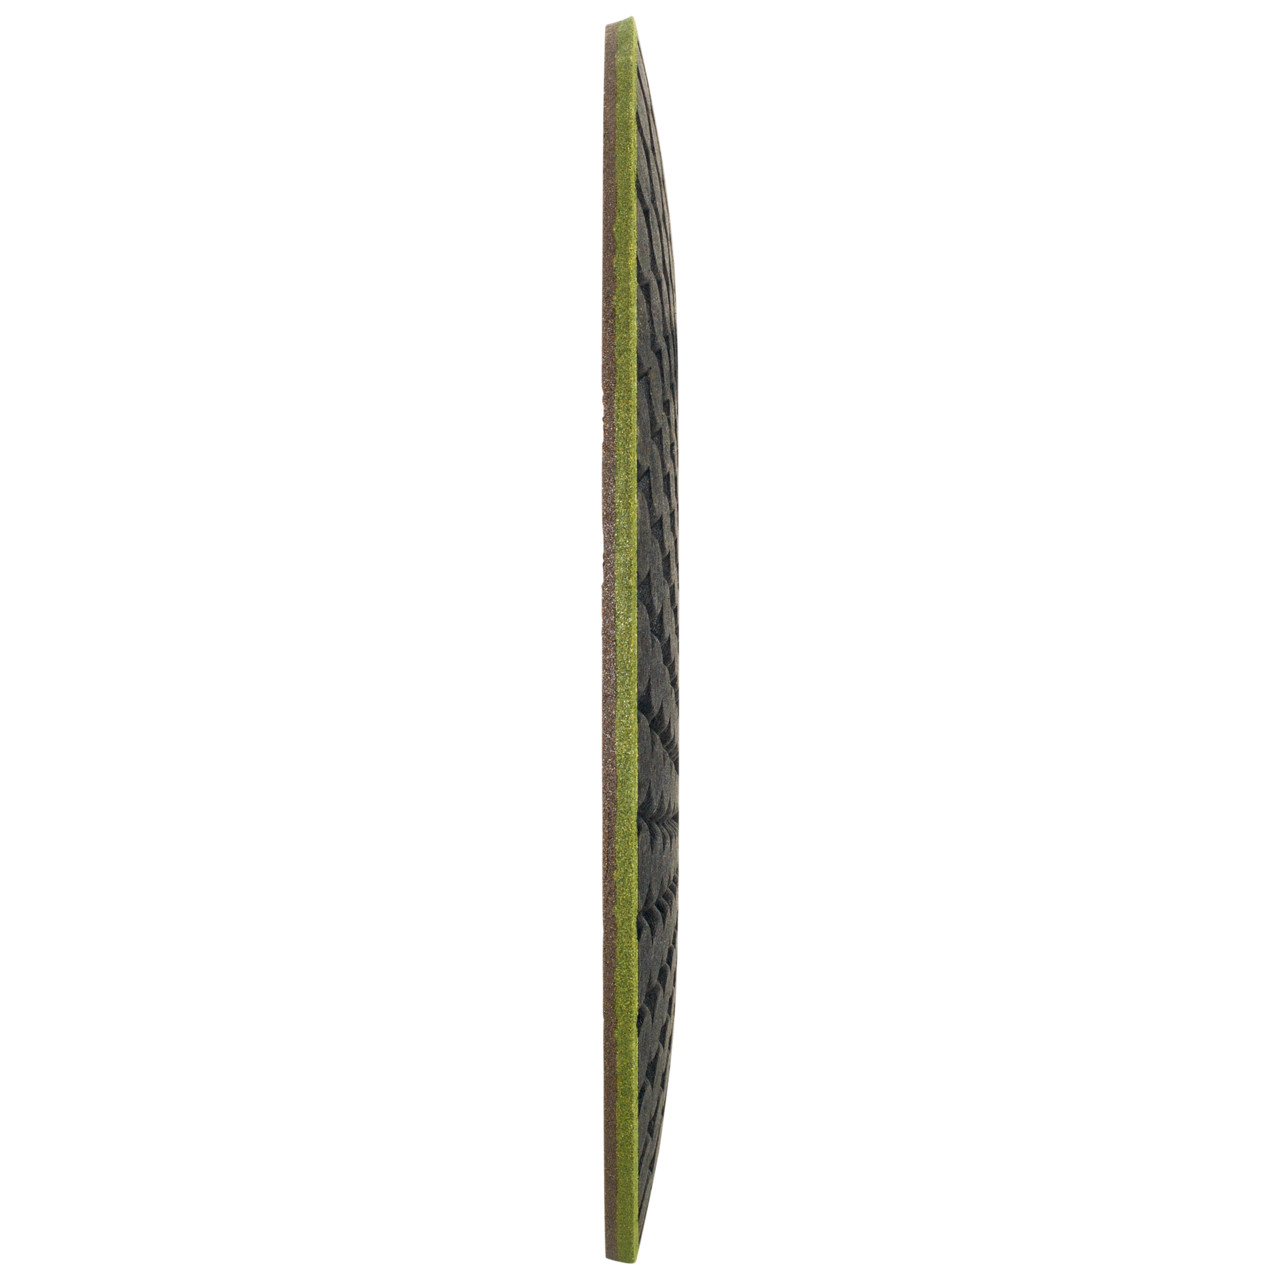 TYROLIT RONDELLER DxH 178x22.23 Voor steen, vorm: 29RON (Rondeller®), Art. 908221